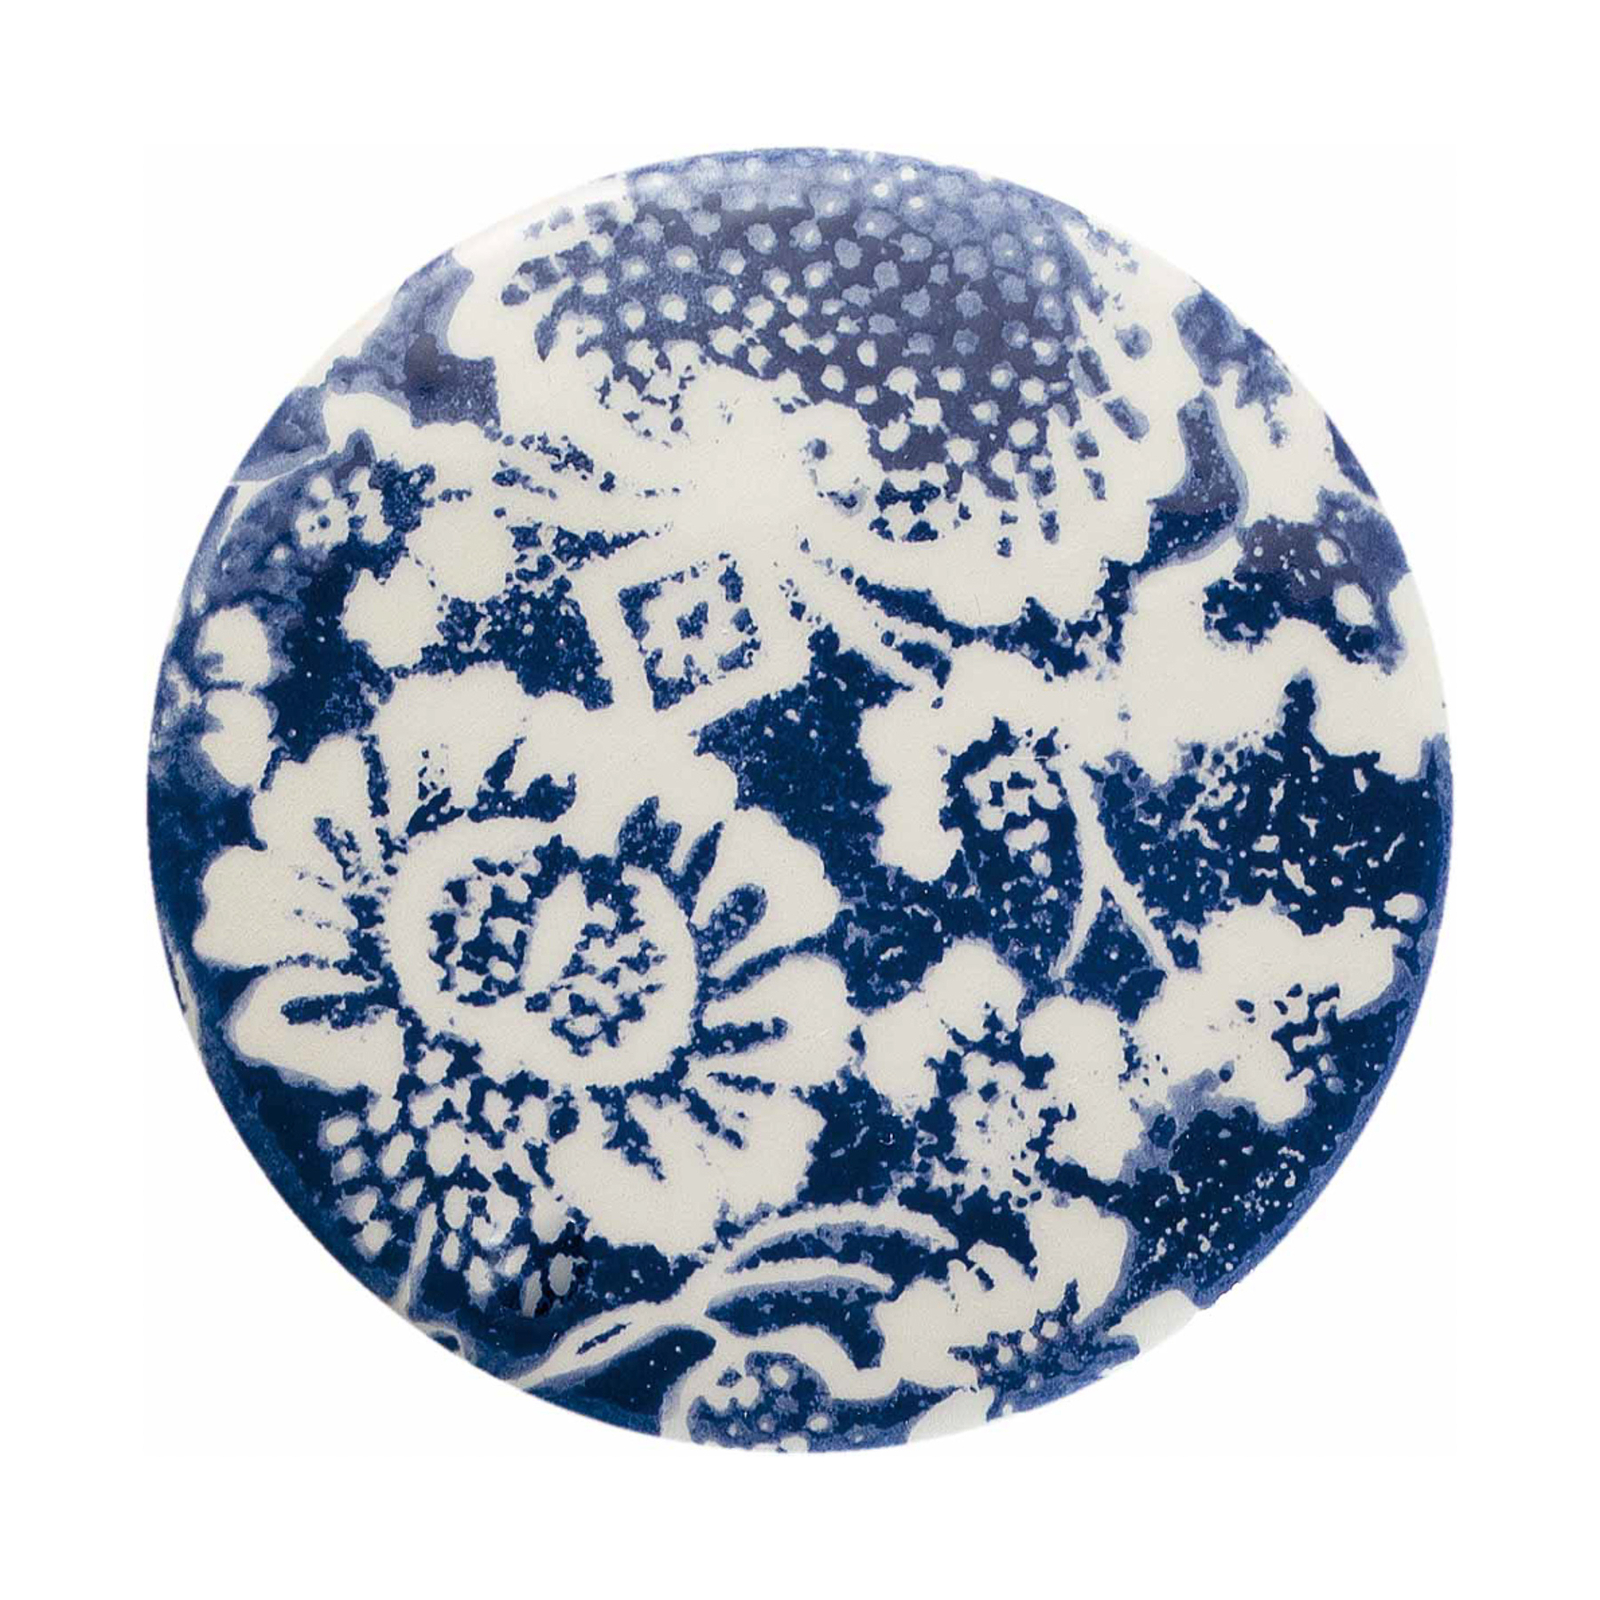 Hängelampe PI mit Blumenmuster, Ø 35 cm, blau/weiß